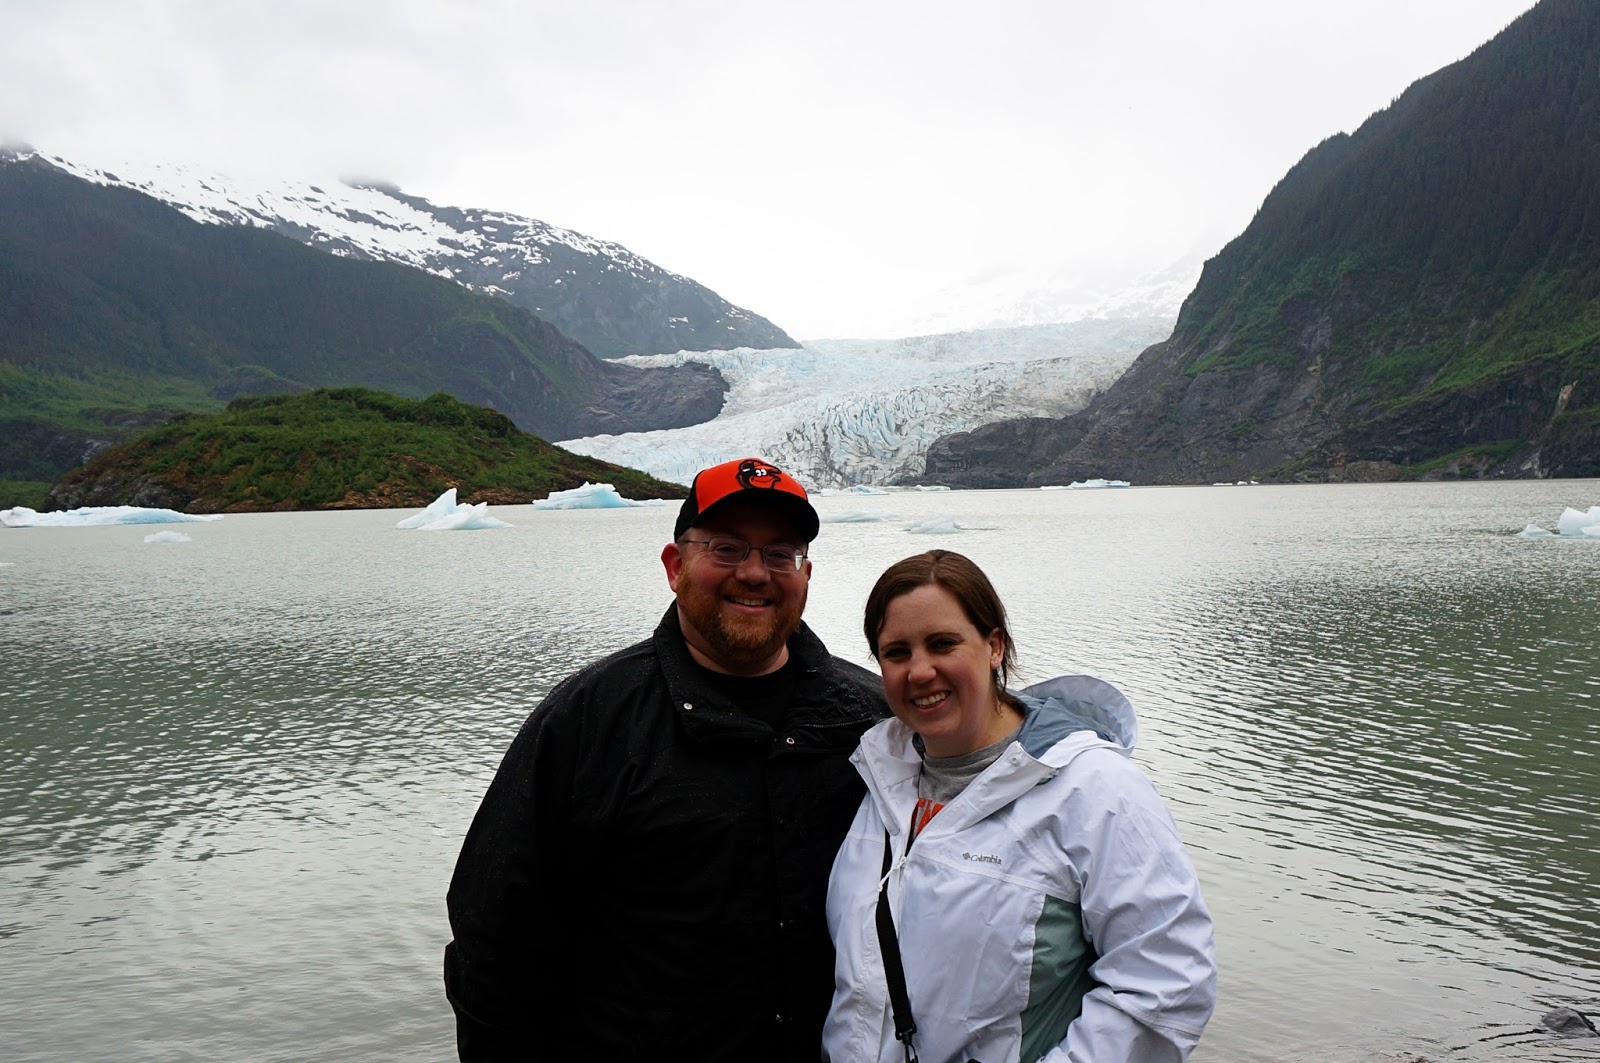 Mendenhal Glacier alaskan cruise review